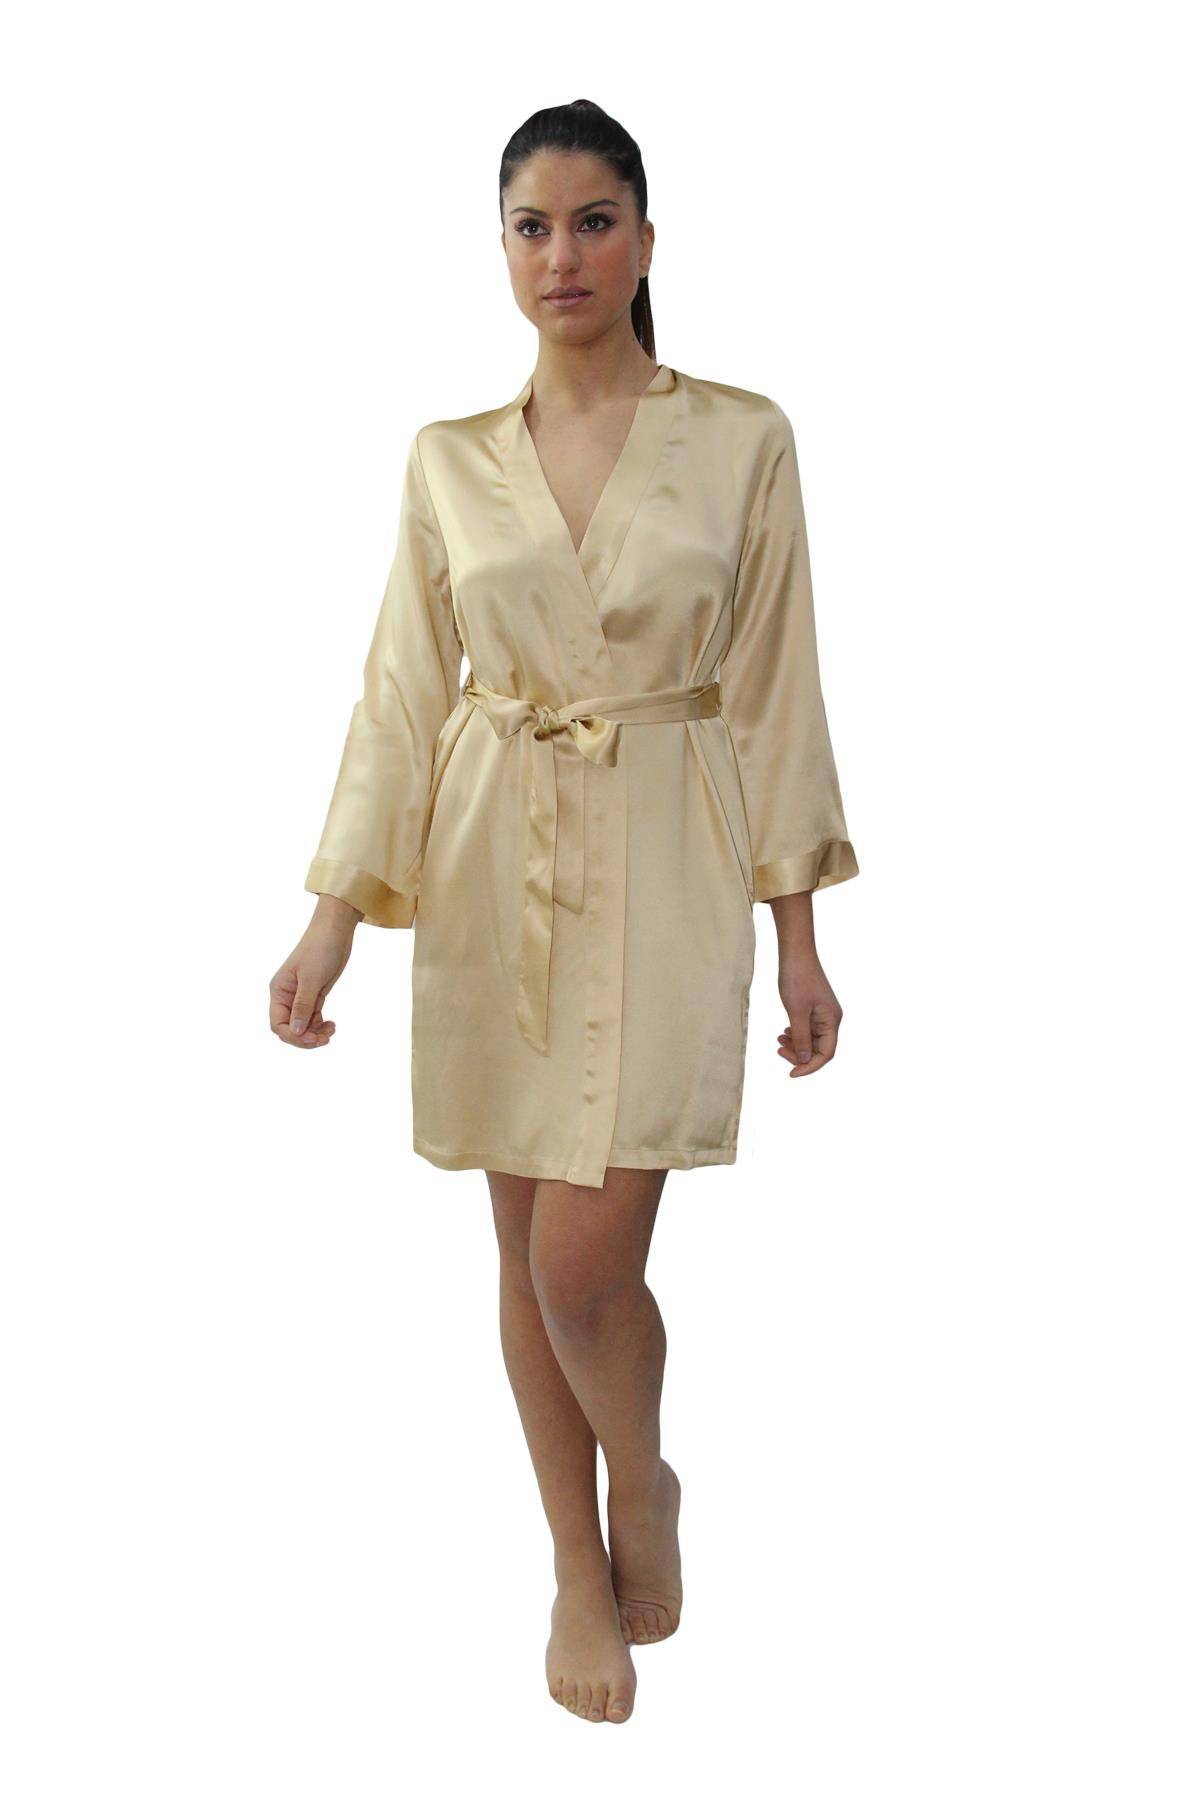 Kimono Incrocio Donna COROLLA 215 Millenotti - evabiancheria